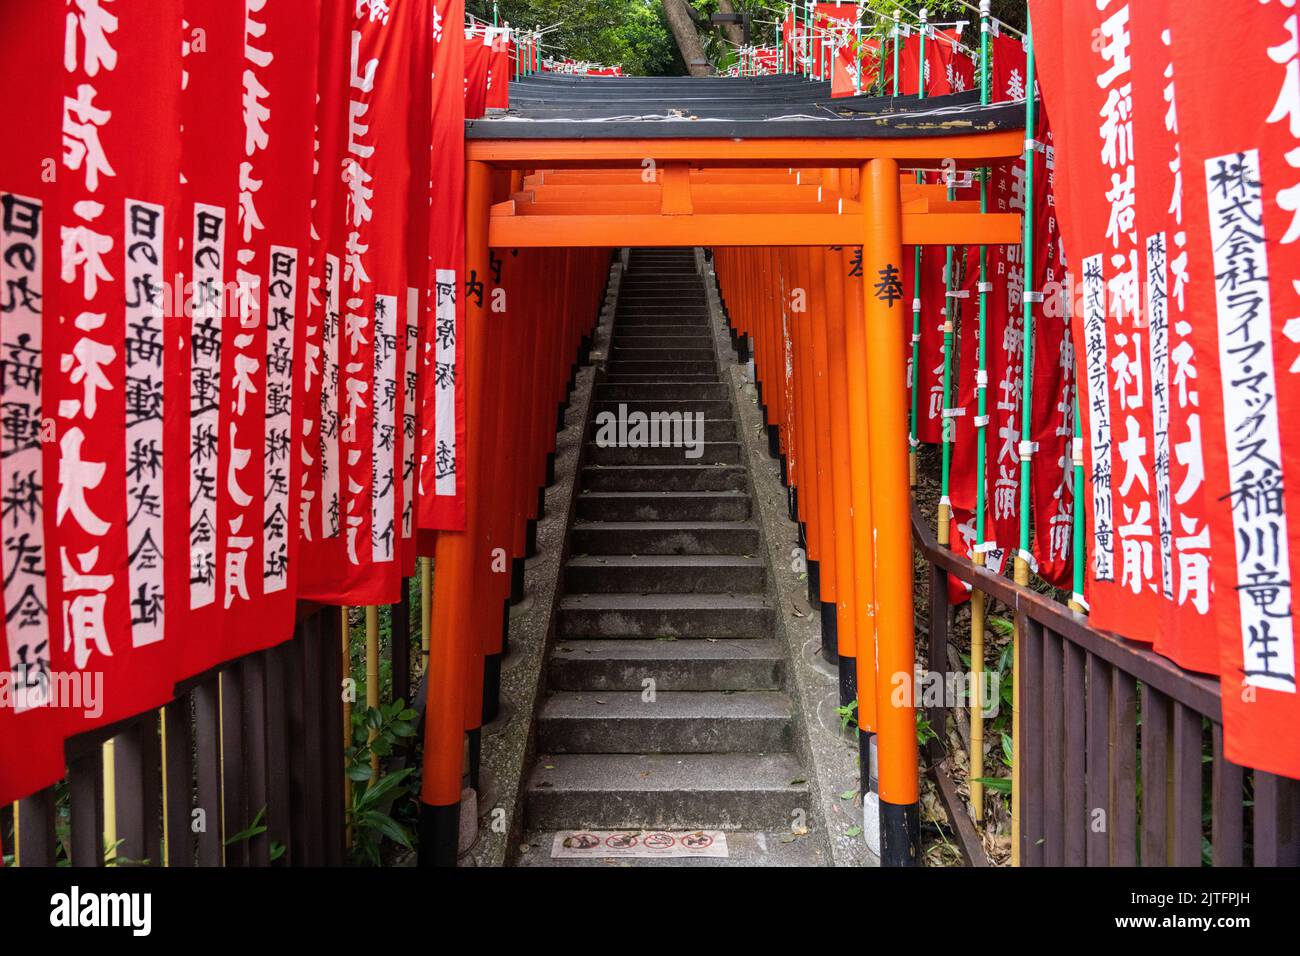 Ein lebhafter Tunnel aus roten Torii-Toren säumen die Steintreppen, die zum Hie Jinja-Schrein in Nagatacho, Chiyoda, Tokio, Japan, führen. Der schintoistische Schrein ist einer der drei großen Schreine Tokyos. Stockfoto